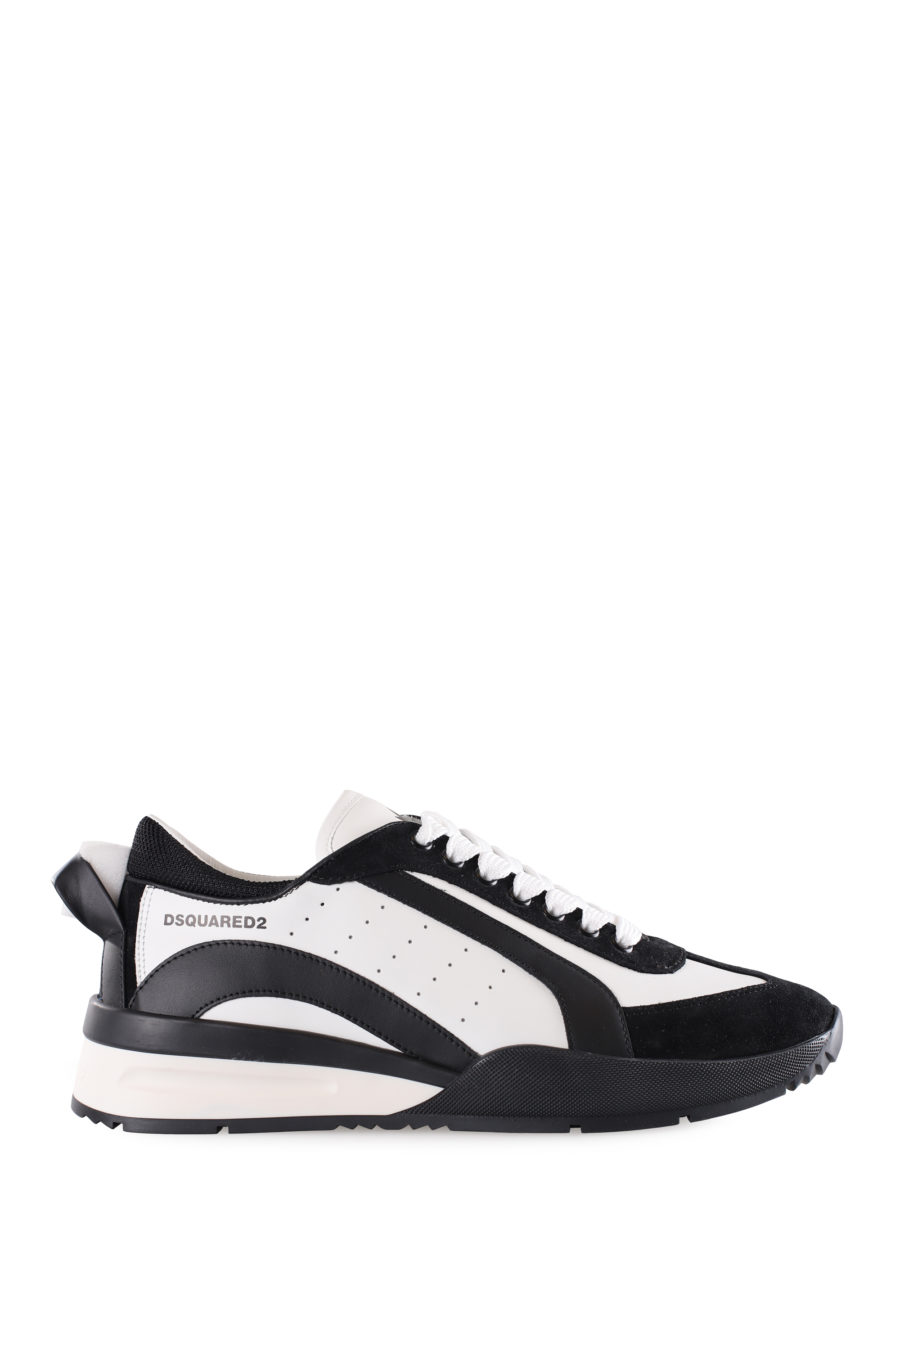 Zapatillas blancas con detalles negros y logo pequeño - IMG 9502